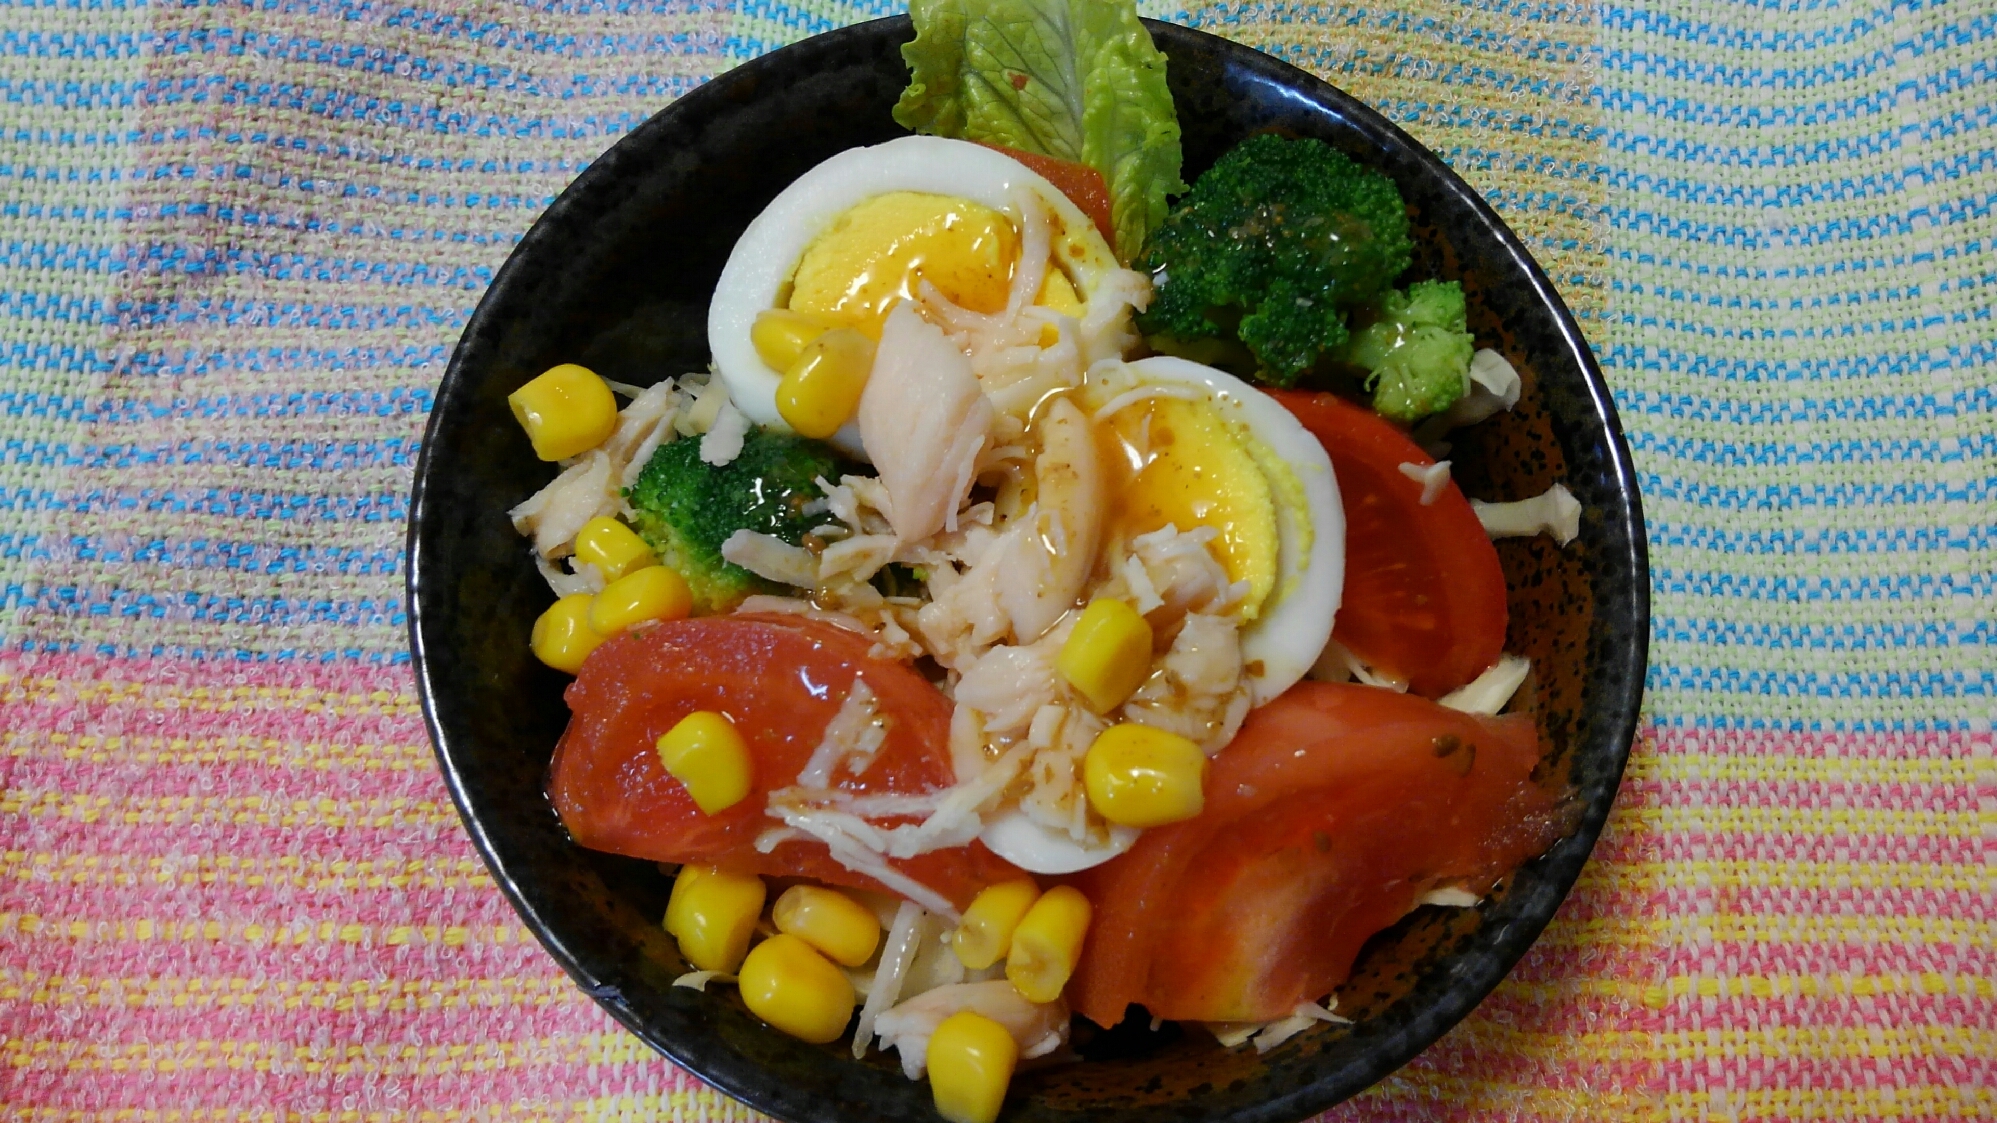 ゆで卵ととりささみ、コーン缶のサラダ(^o^)